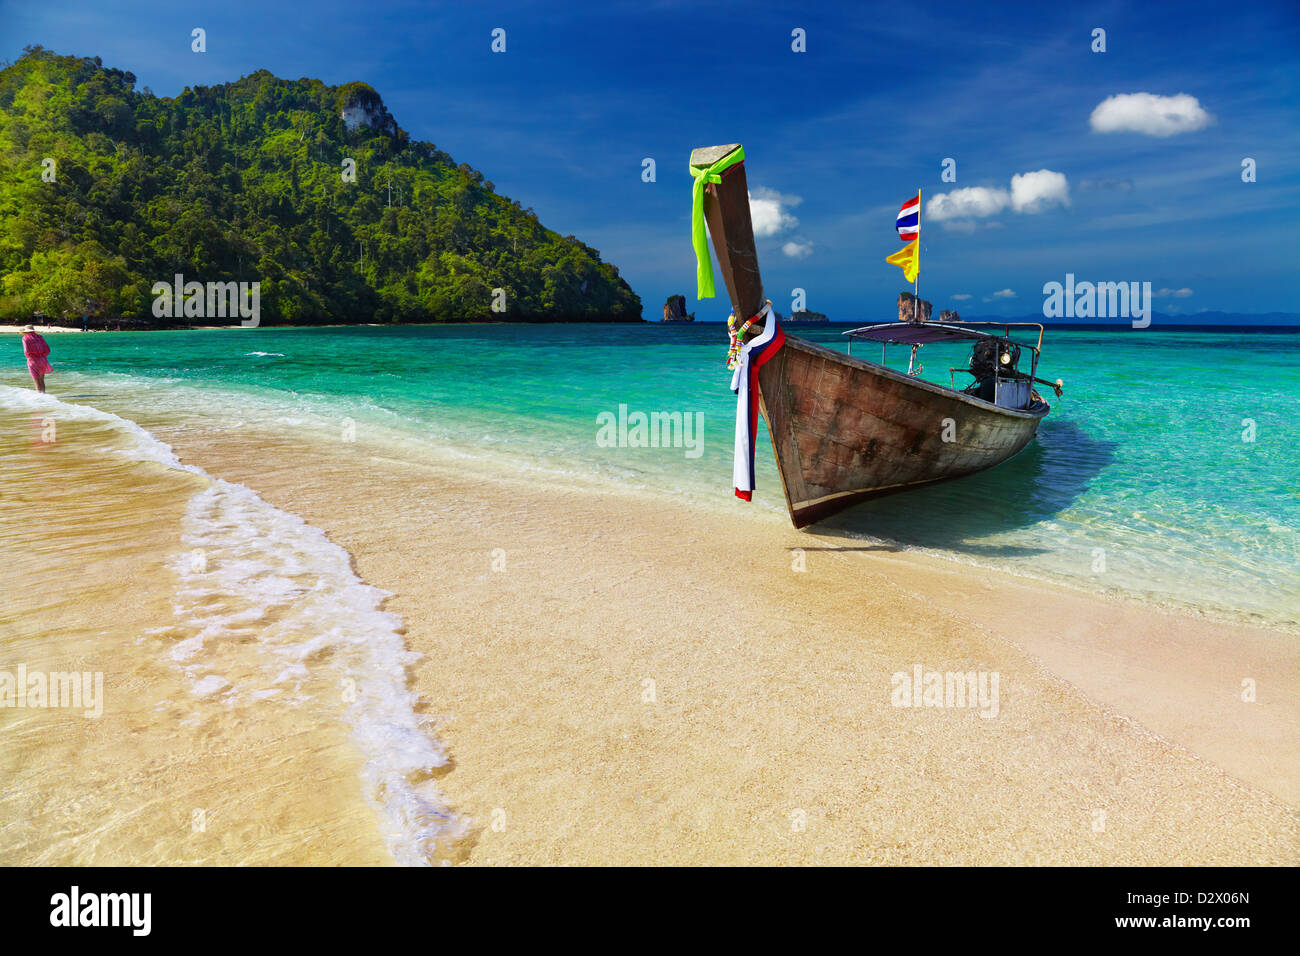 Bateau Longtail, bain à remous, plage tropicale, l'île de la mer d'Andaman, Thaïlande Banque D'Images